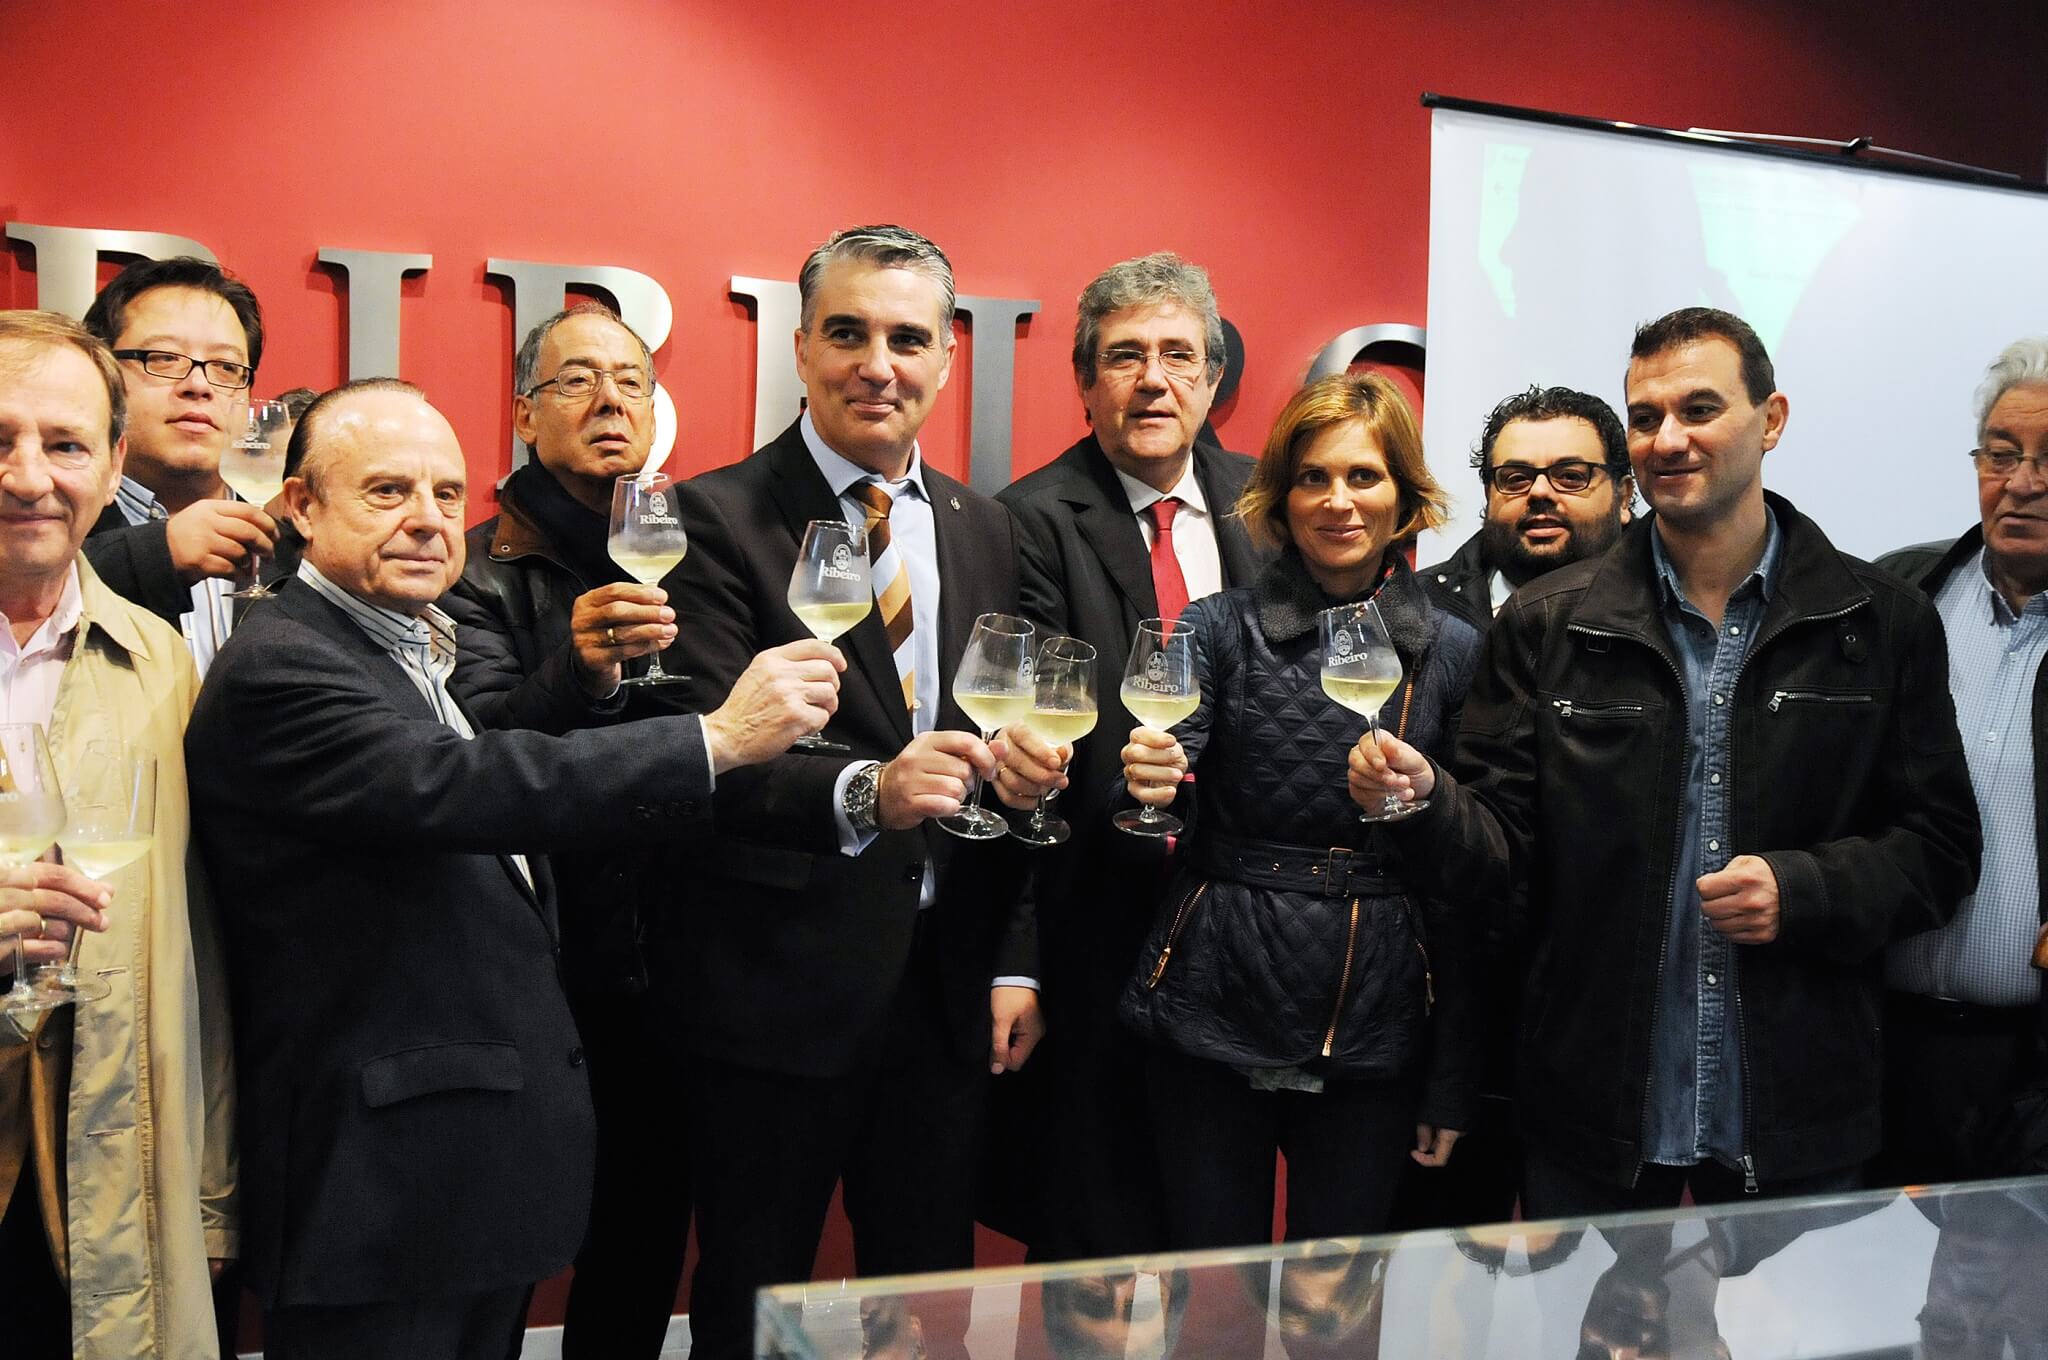 La Ruta do Viño do Ribeiro actualiza su material promocional